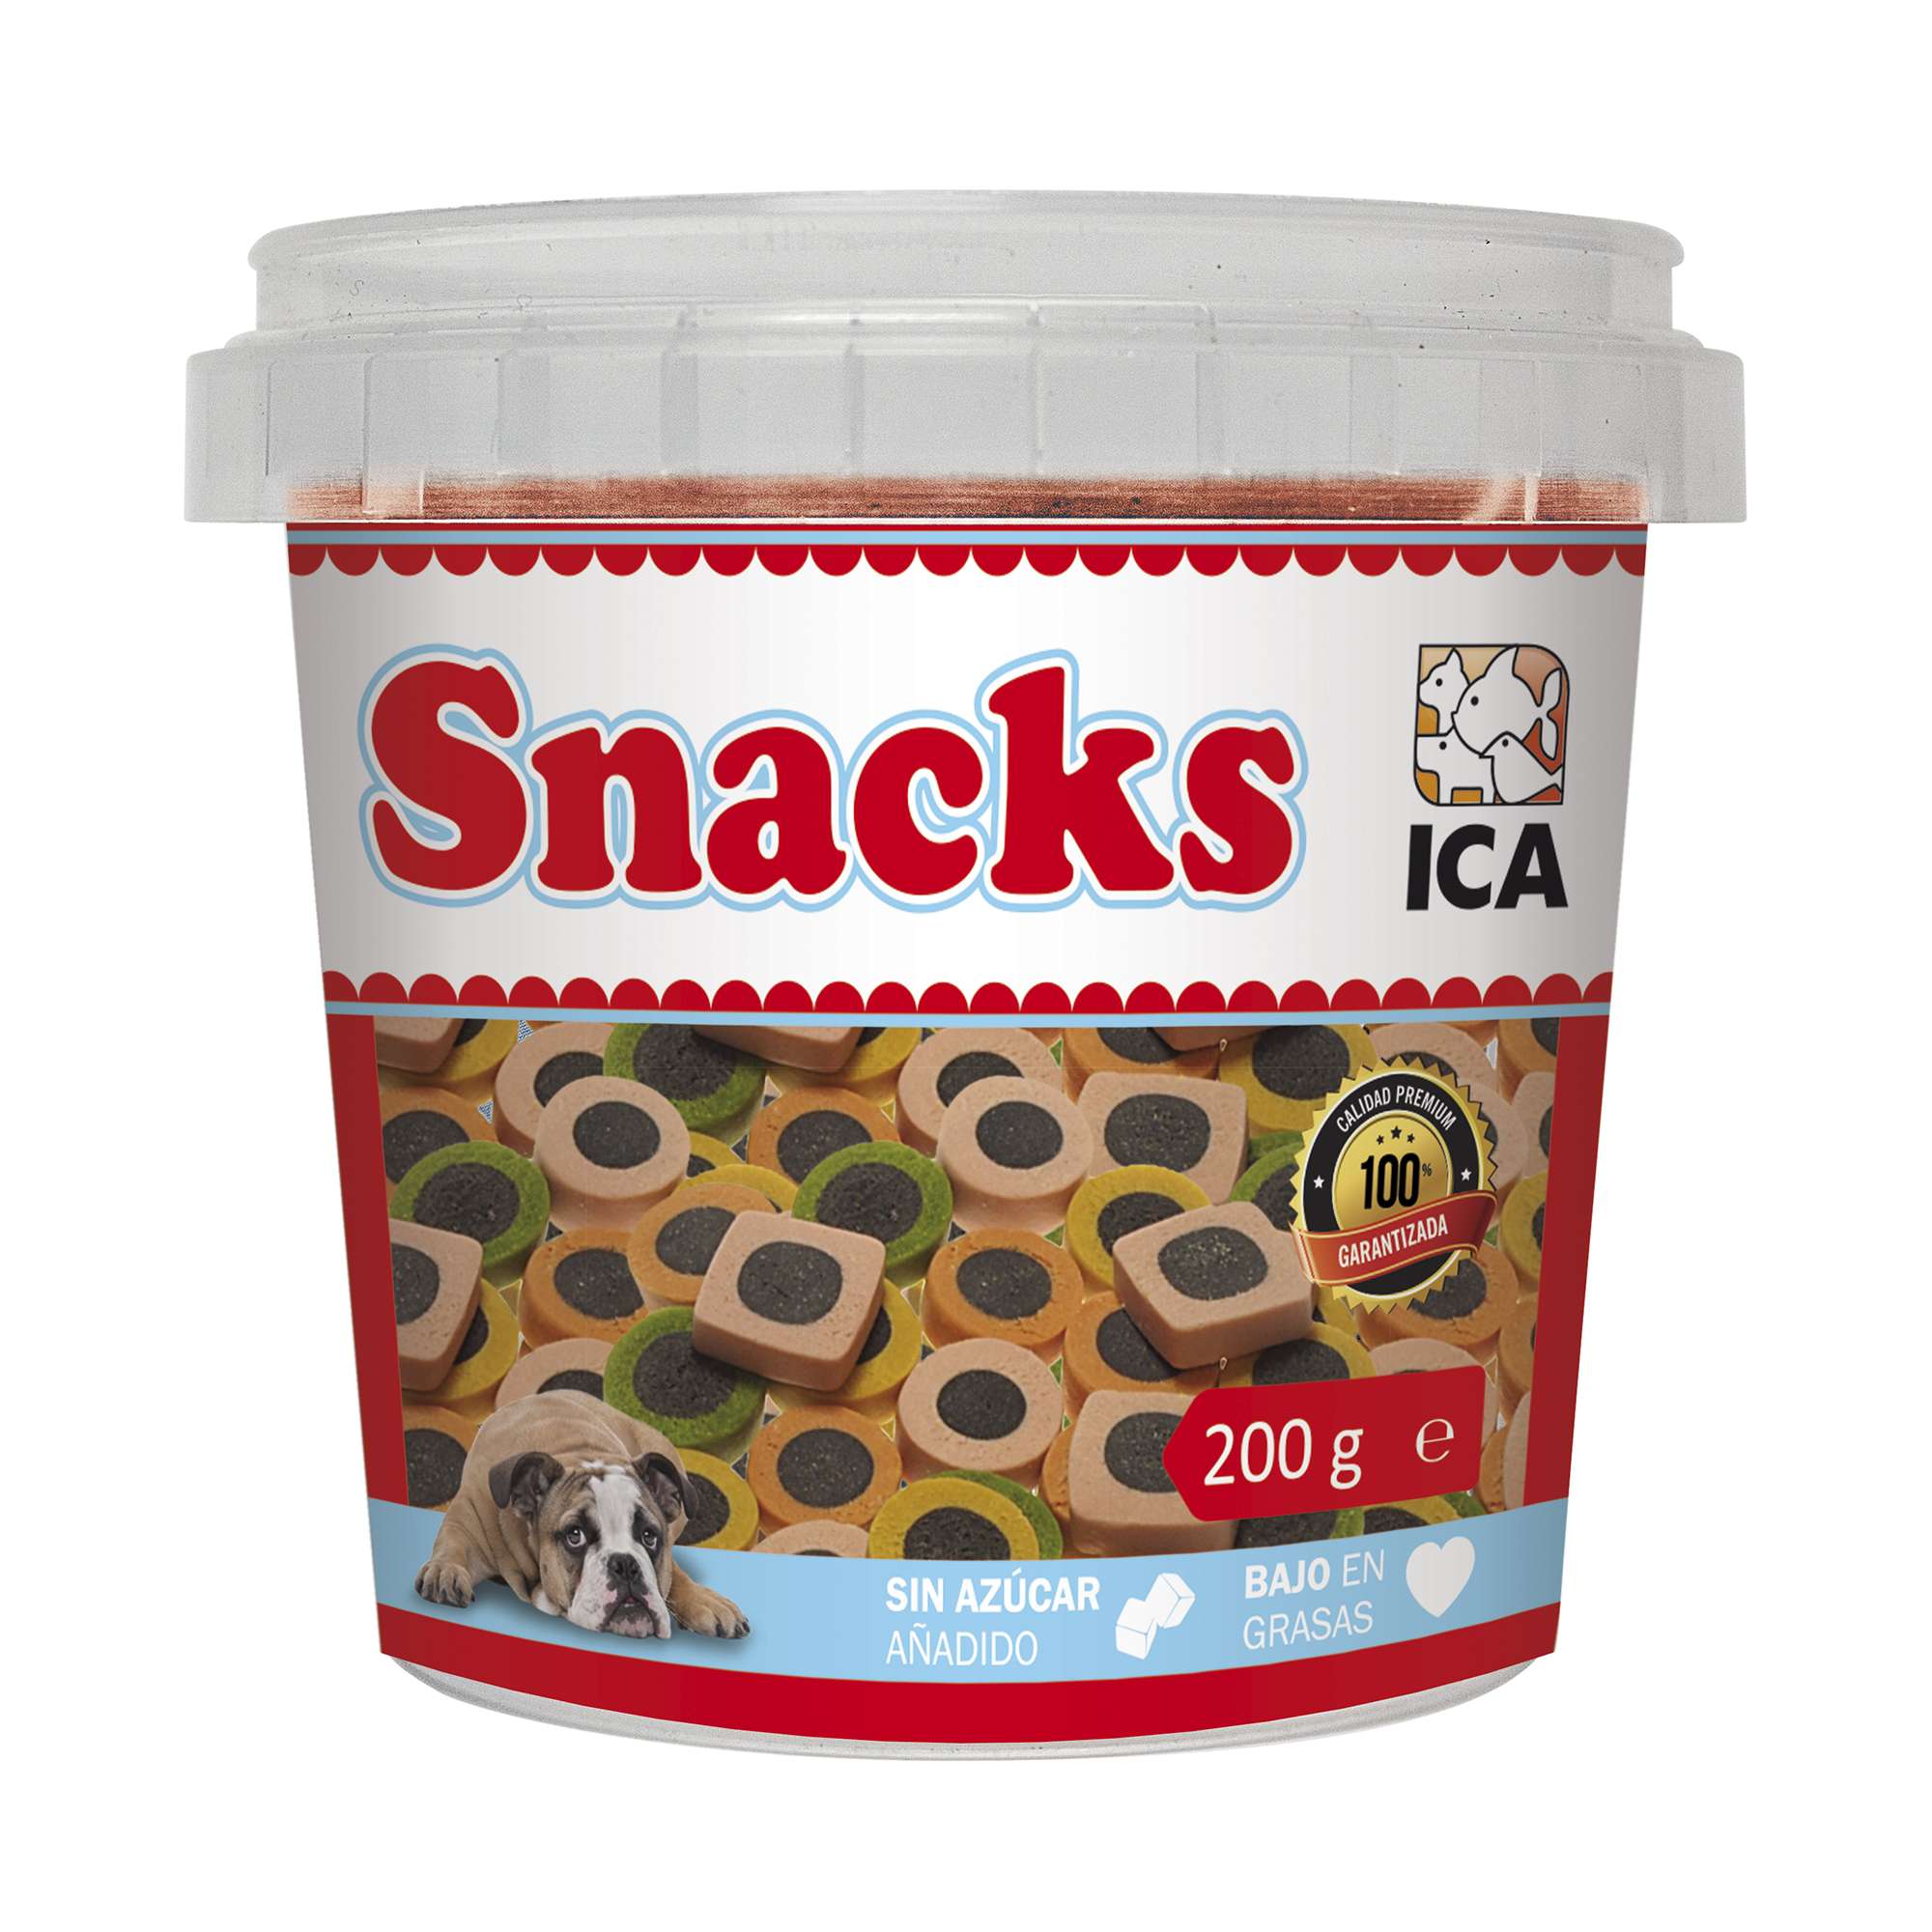 Intacto solicitud Pico Snack Mix color de pollo (200 g) — ICA S.A.